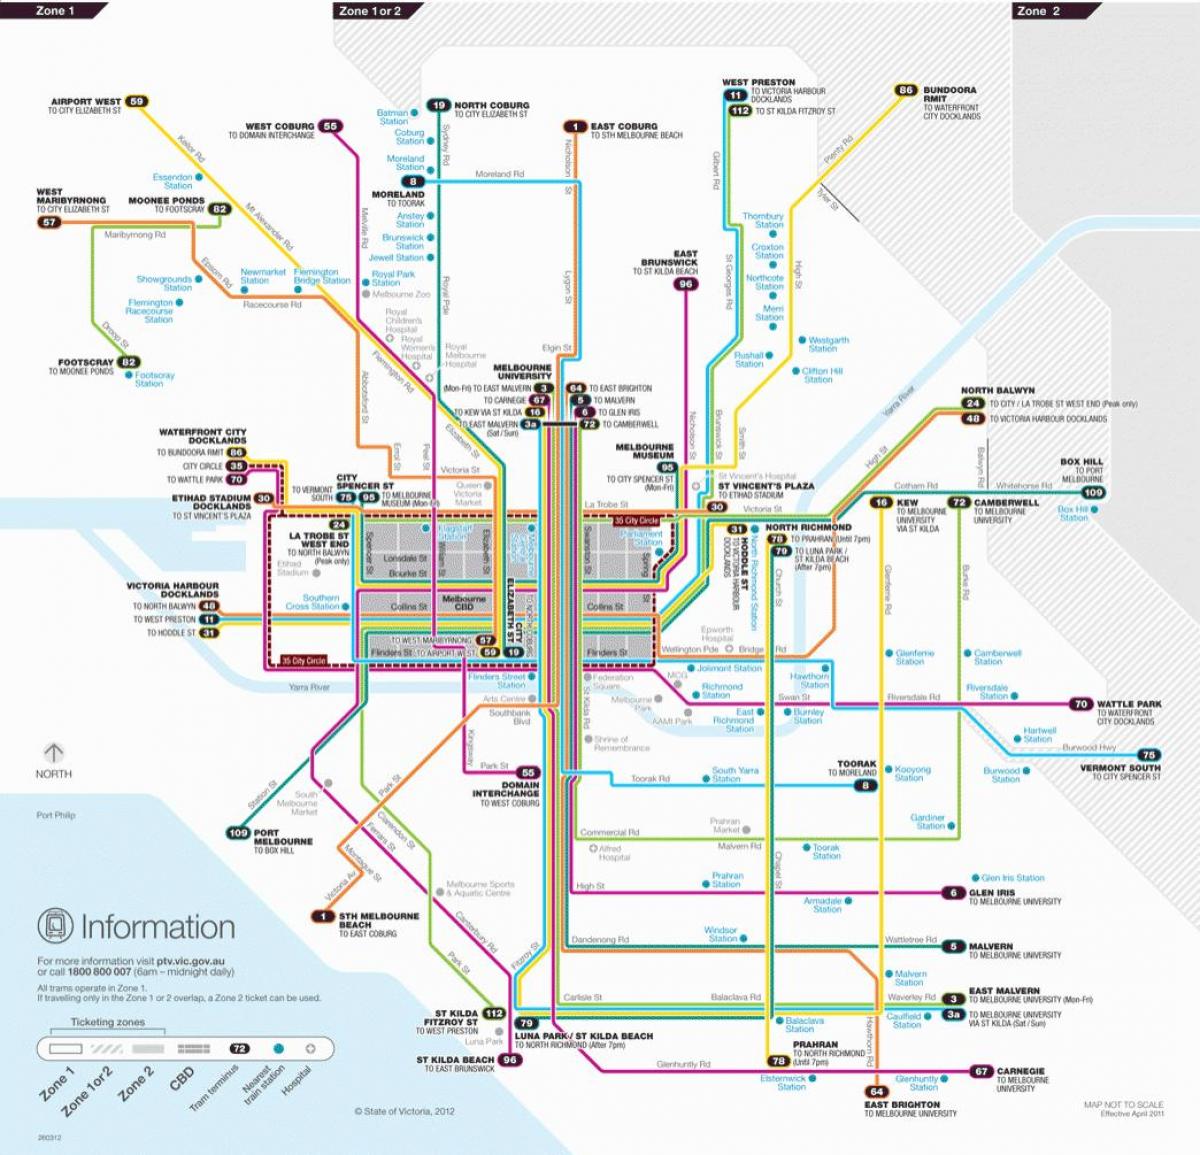 Melbourne tram route anzeigen